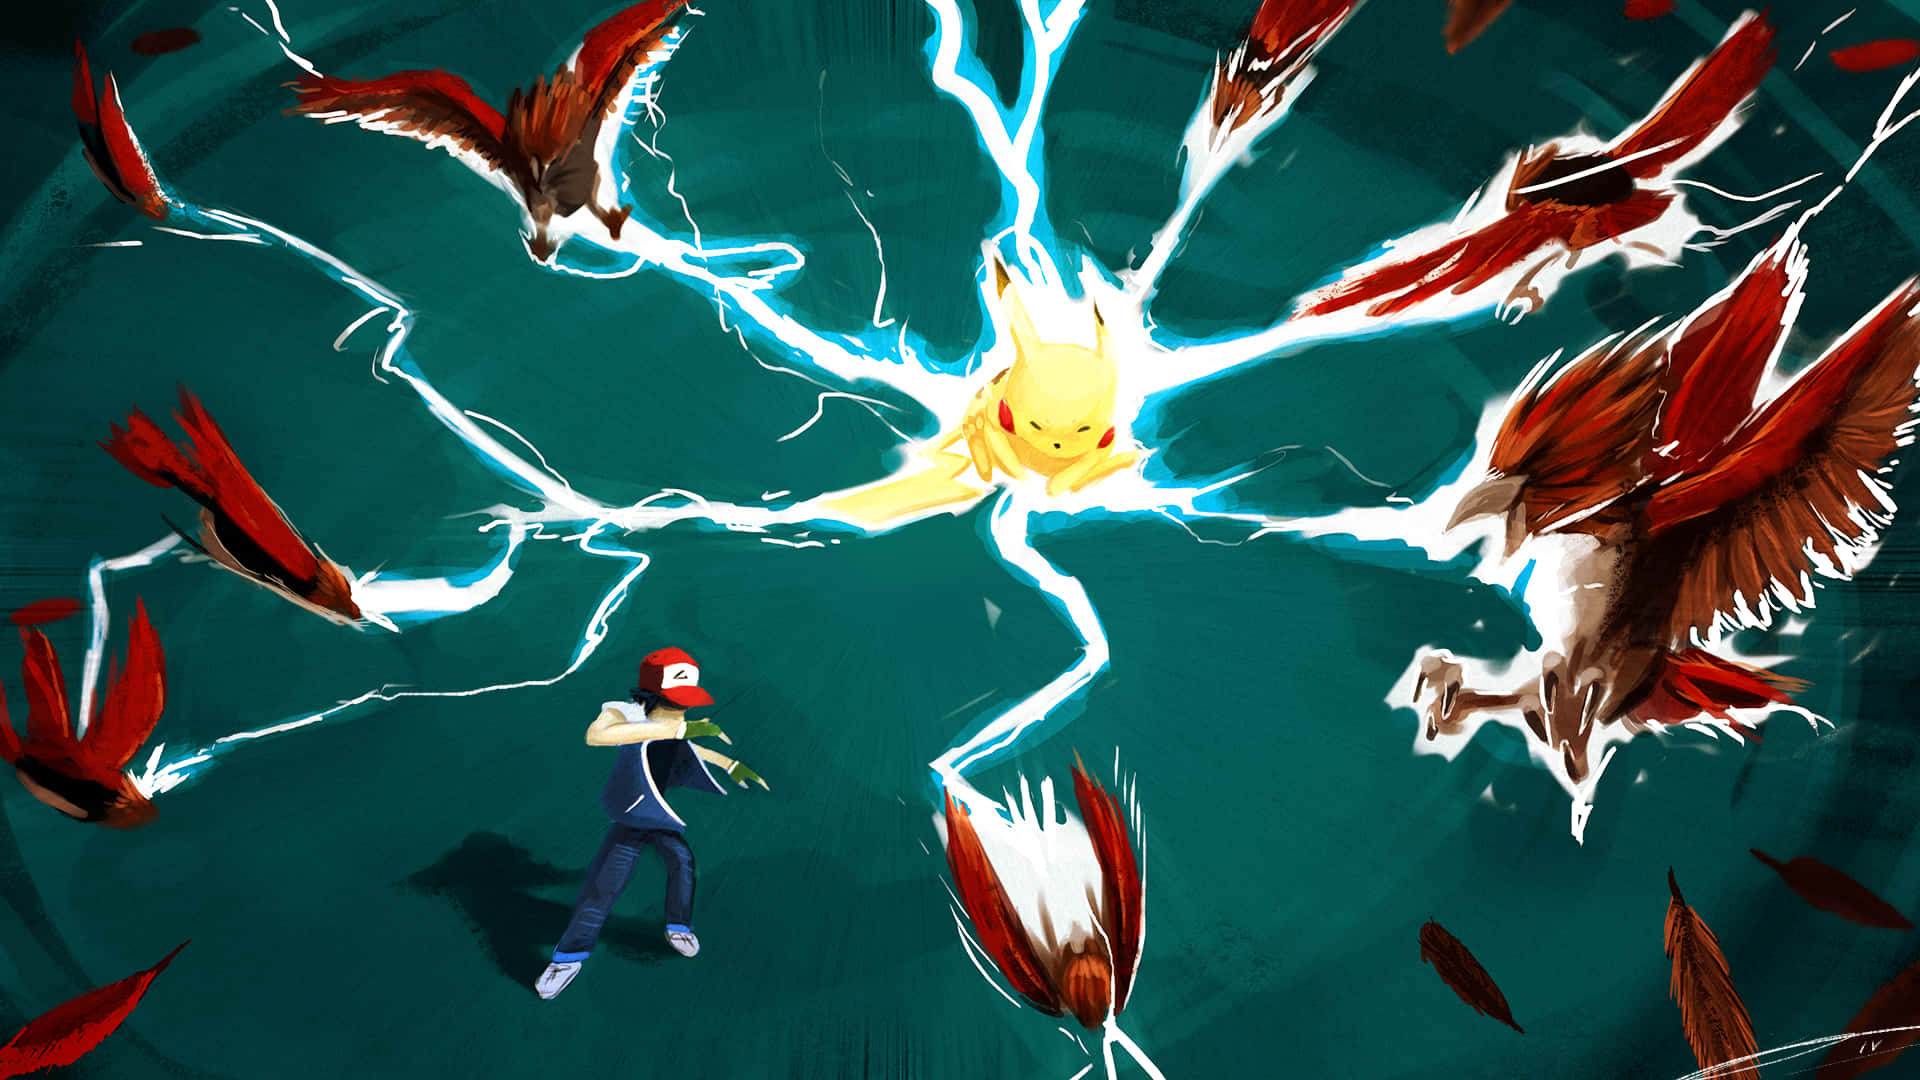 Fondode Pantalla De Batalla De Pokémon Con Pidgeotto Atacando A Pikachu Y Ash Ketchum.